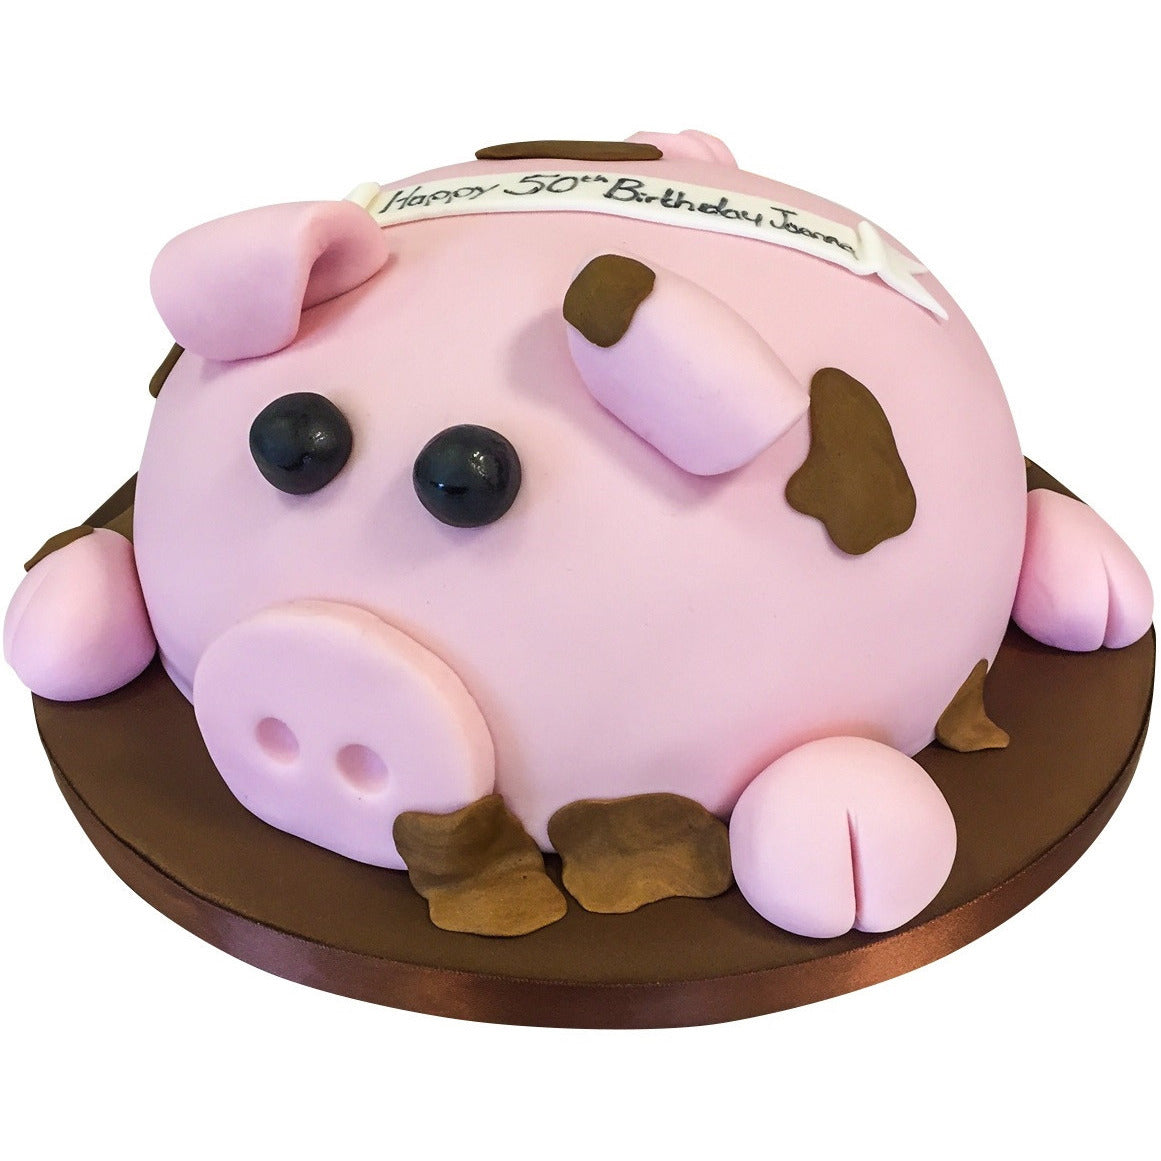 Peppa Pig Birthday Cake | Free Cake Delivery Delhi | Yummy Cake